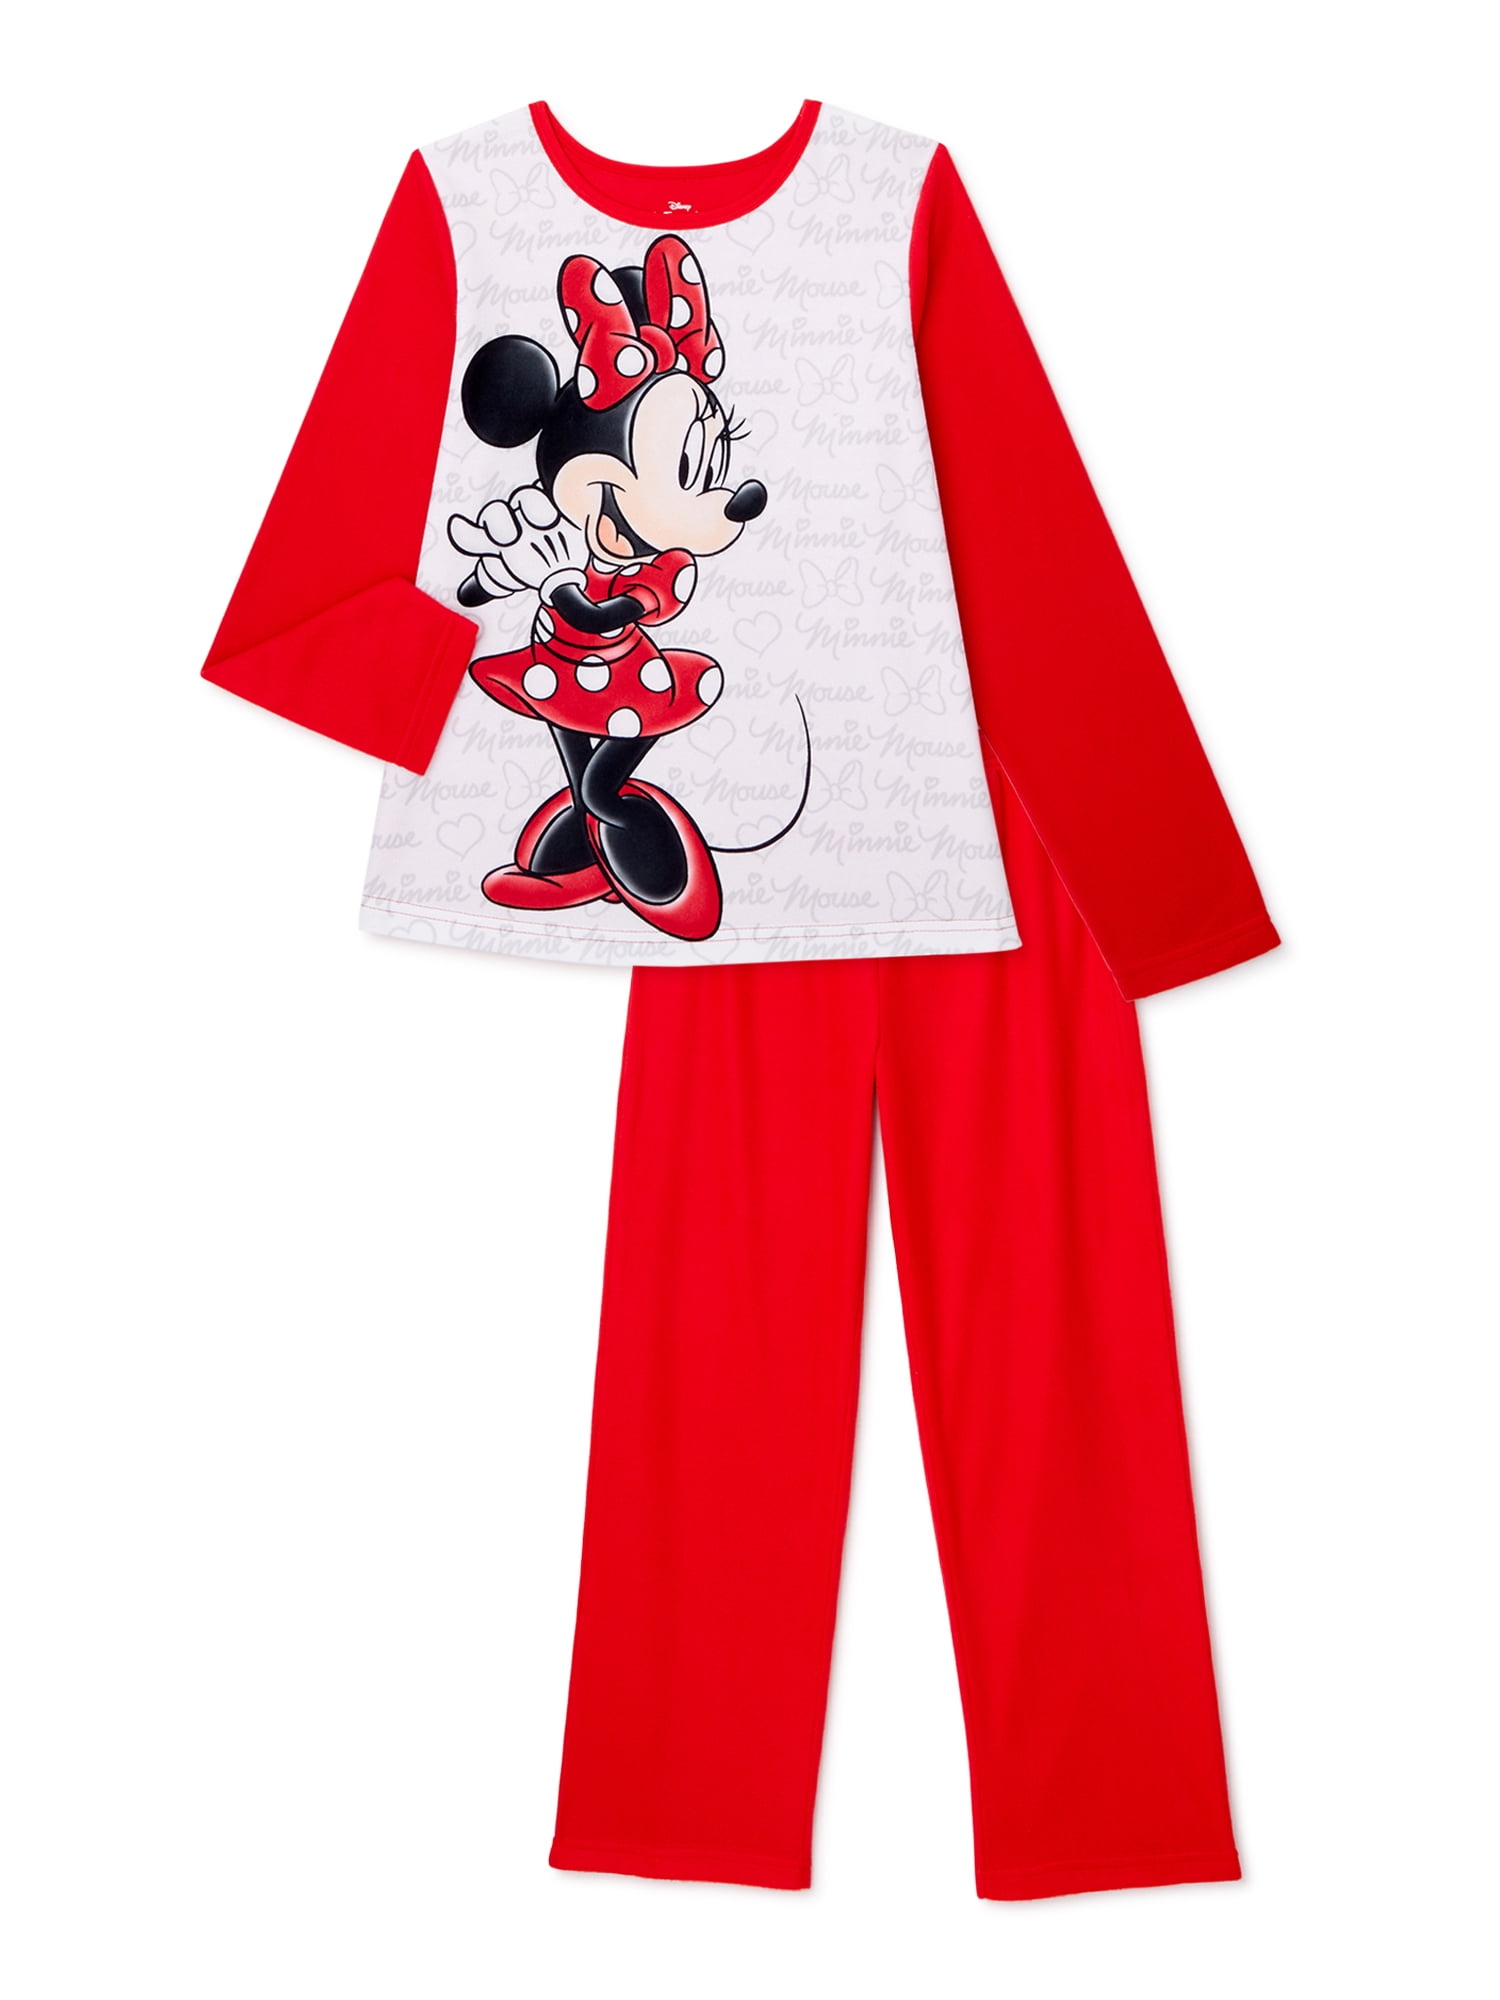 Disney Store Deluxe Minnie Mouse Christmas Xmas Pajama PJ Holiday 2pc Sleep NEW 